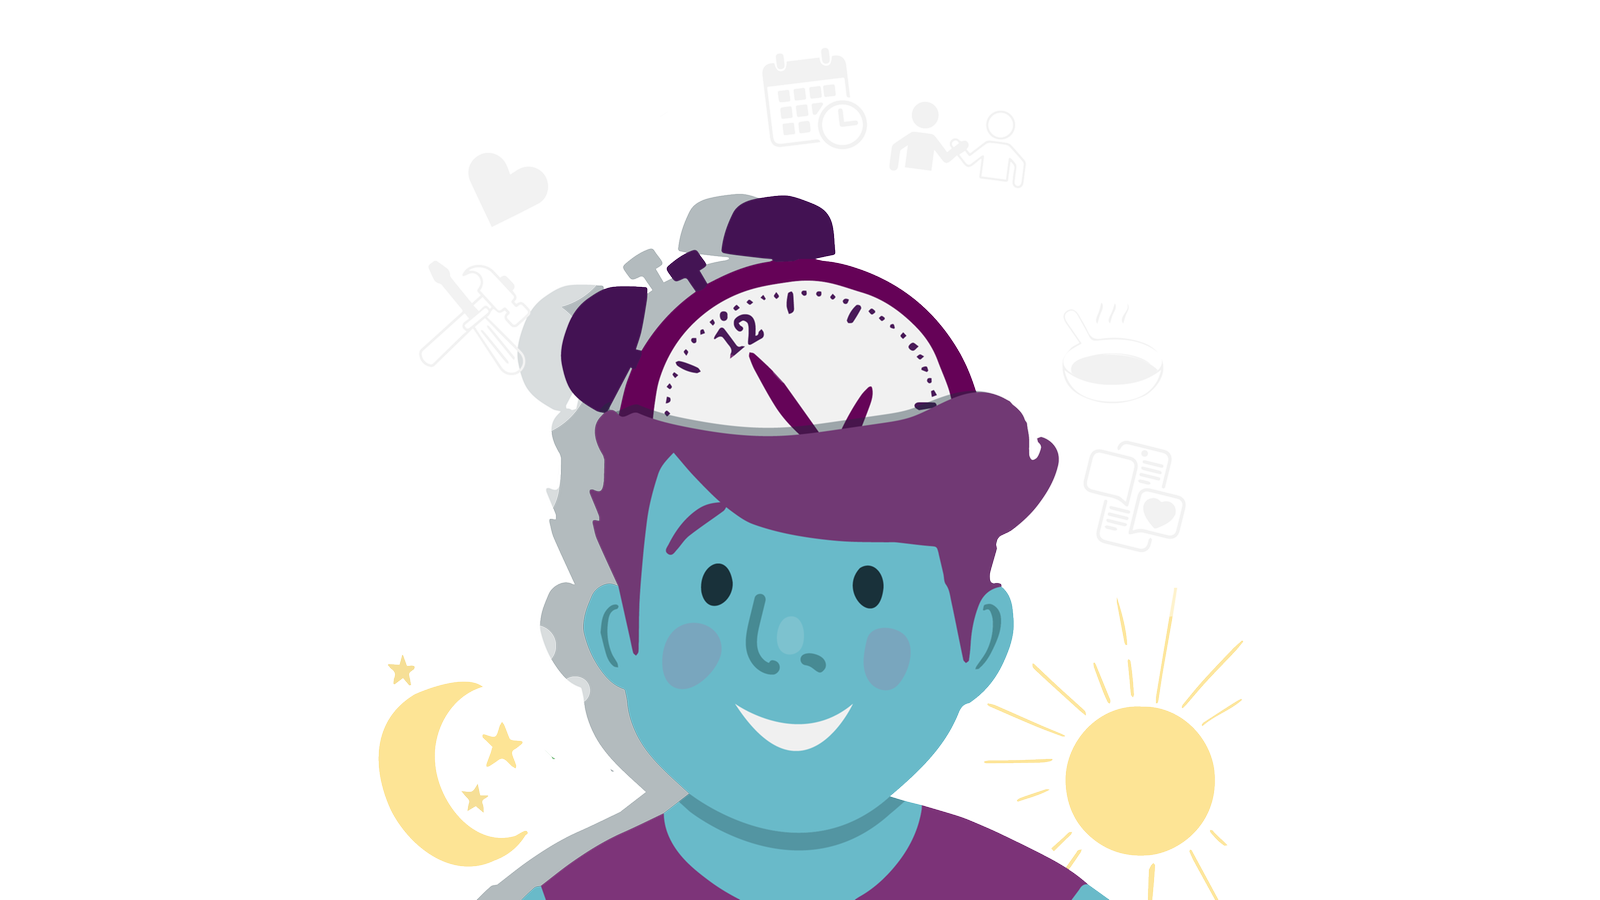 Die Illustration zeigt eine Person mit einer Uhr im Kopf, drumherum sieht man eine Gedankenblase mit verschiedenen kleinen Symbolen, wie Kalender, Pfanne und Herz.